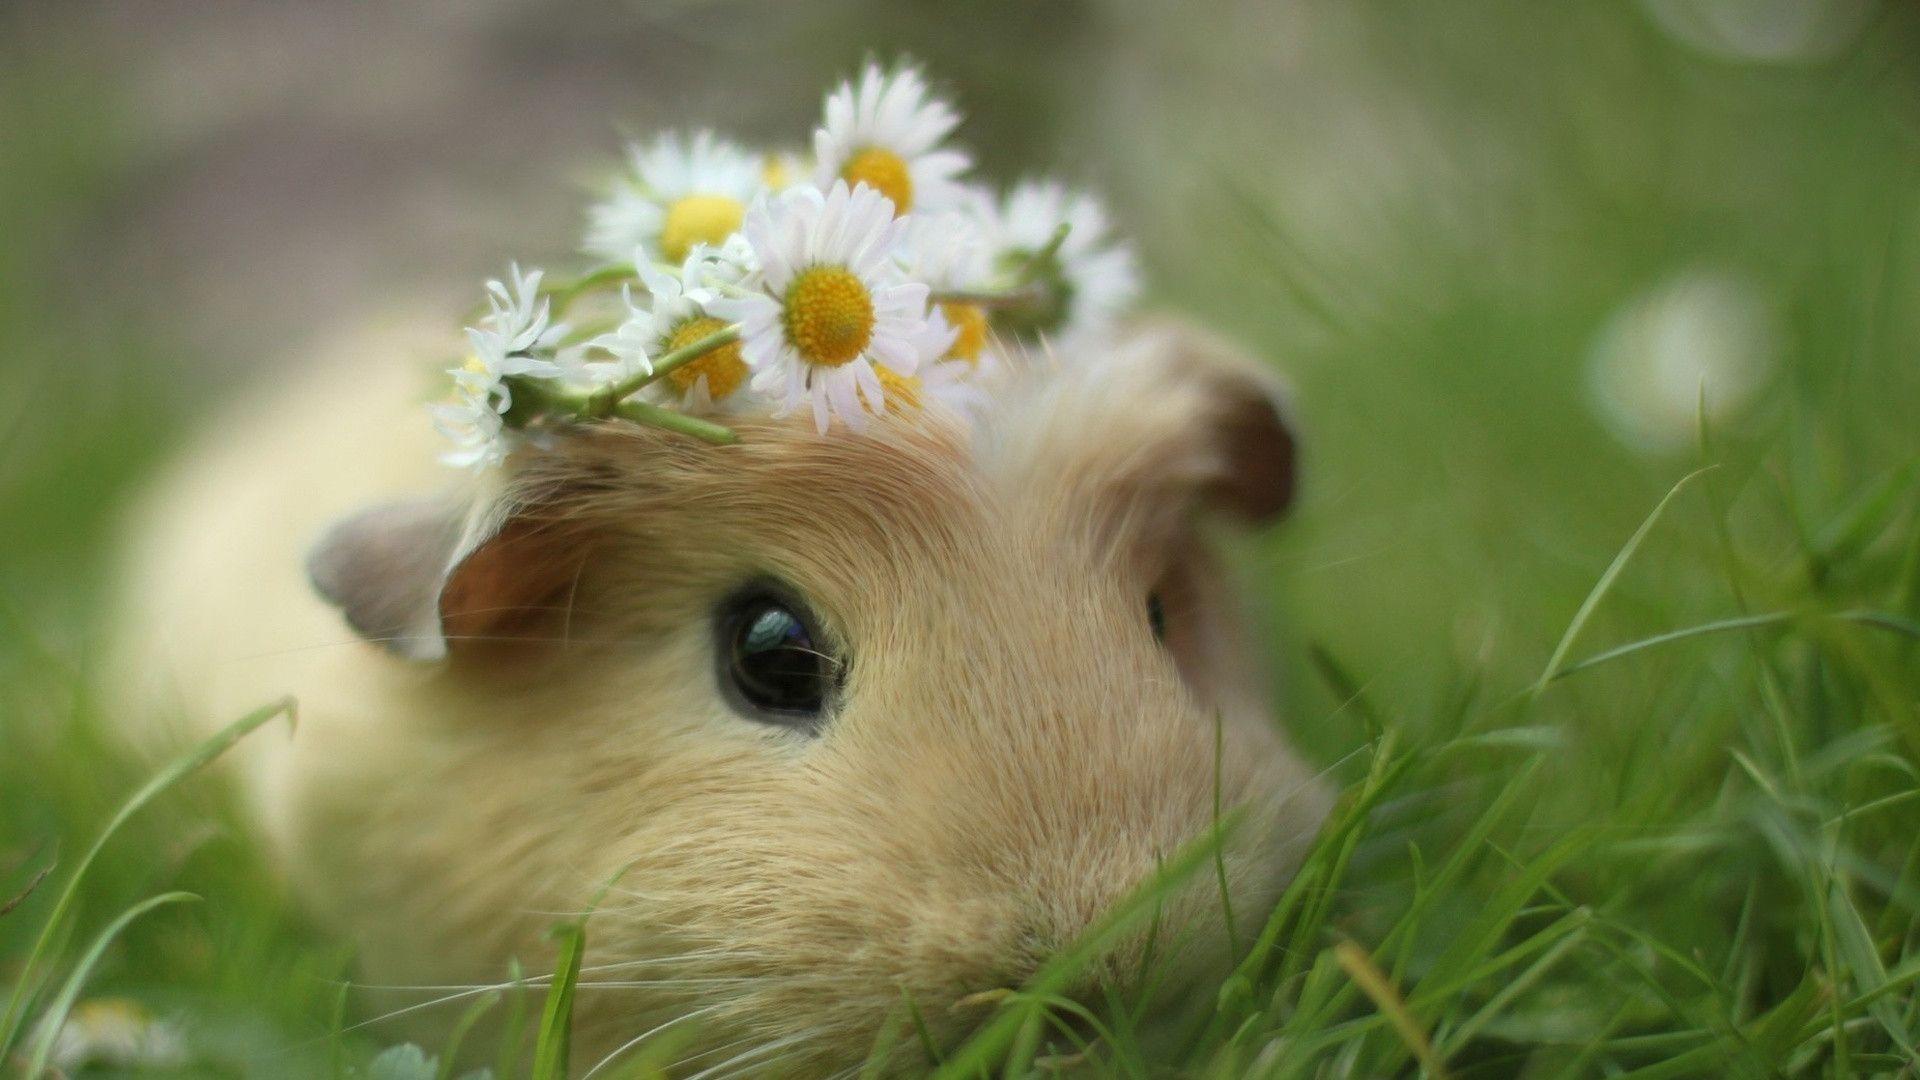  تصویر بسیار عالی از خوکچه هندی با گل های بابونه روی سرش